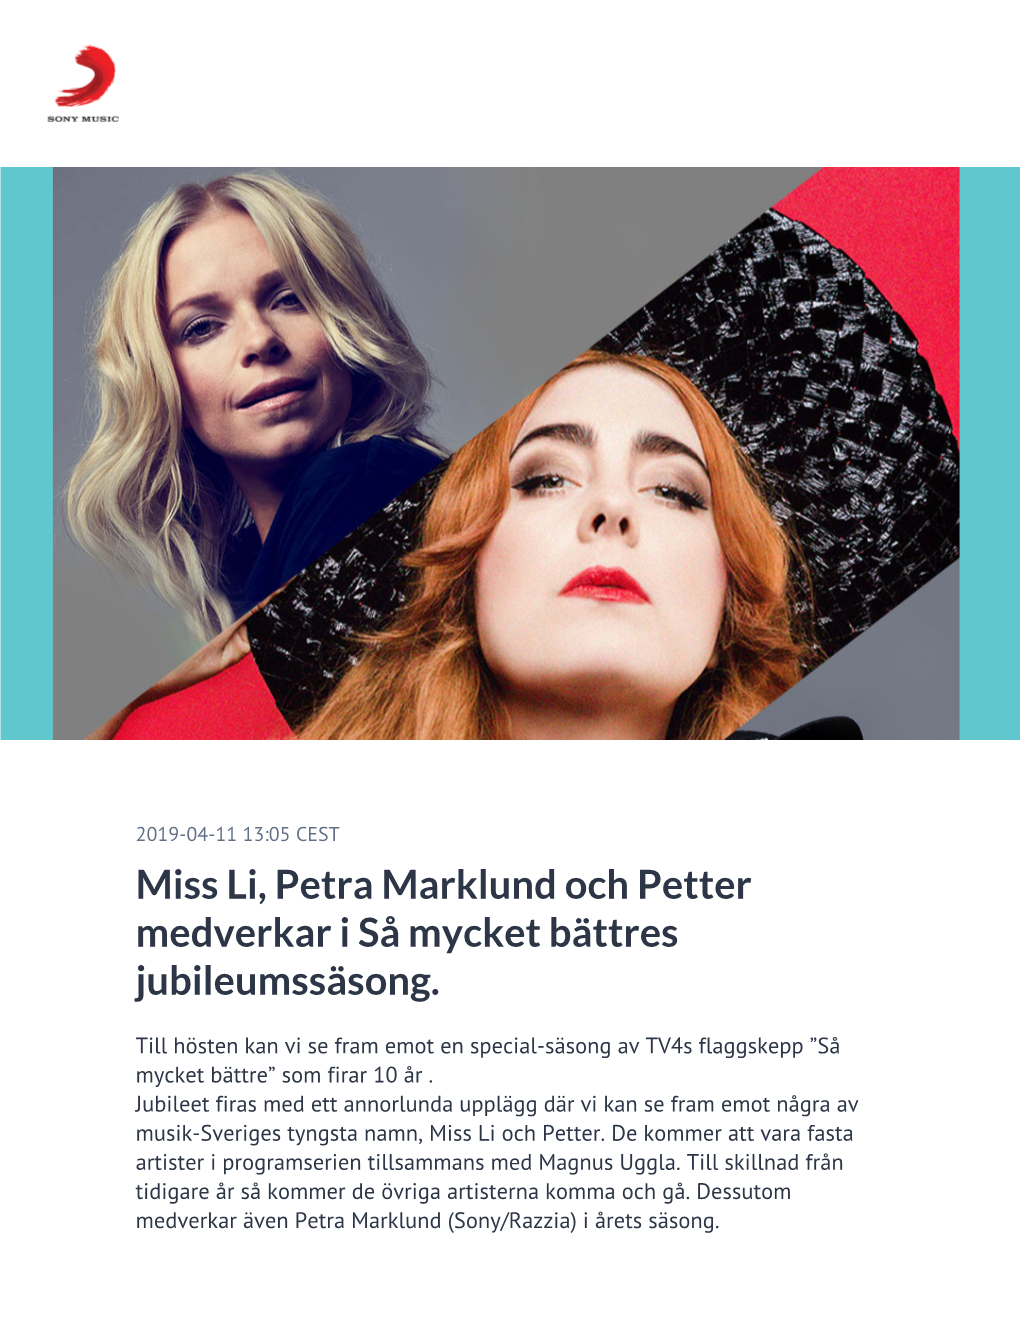 Miss Li, Petra Marklund Och Petter Medverkar I Så Mycket Bättres Jubileumssäsong